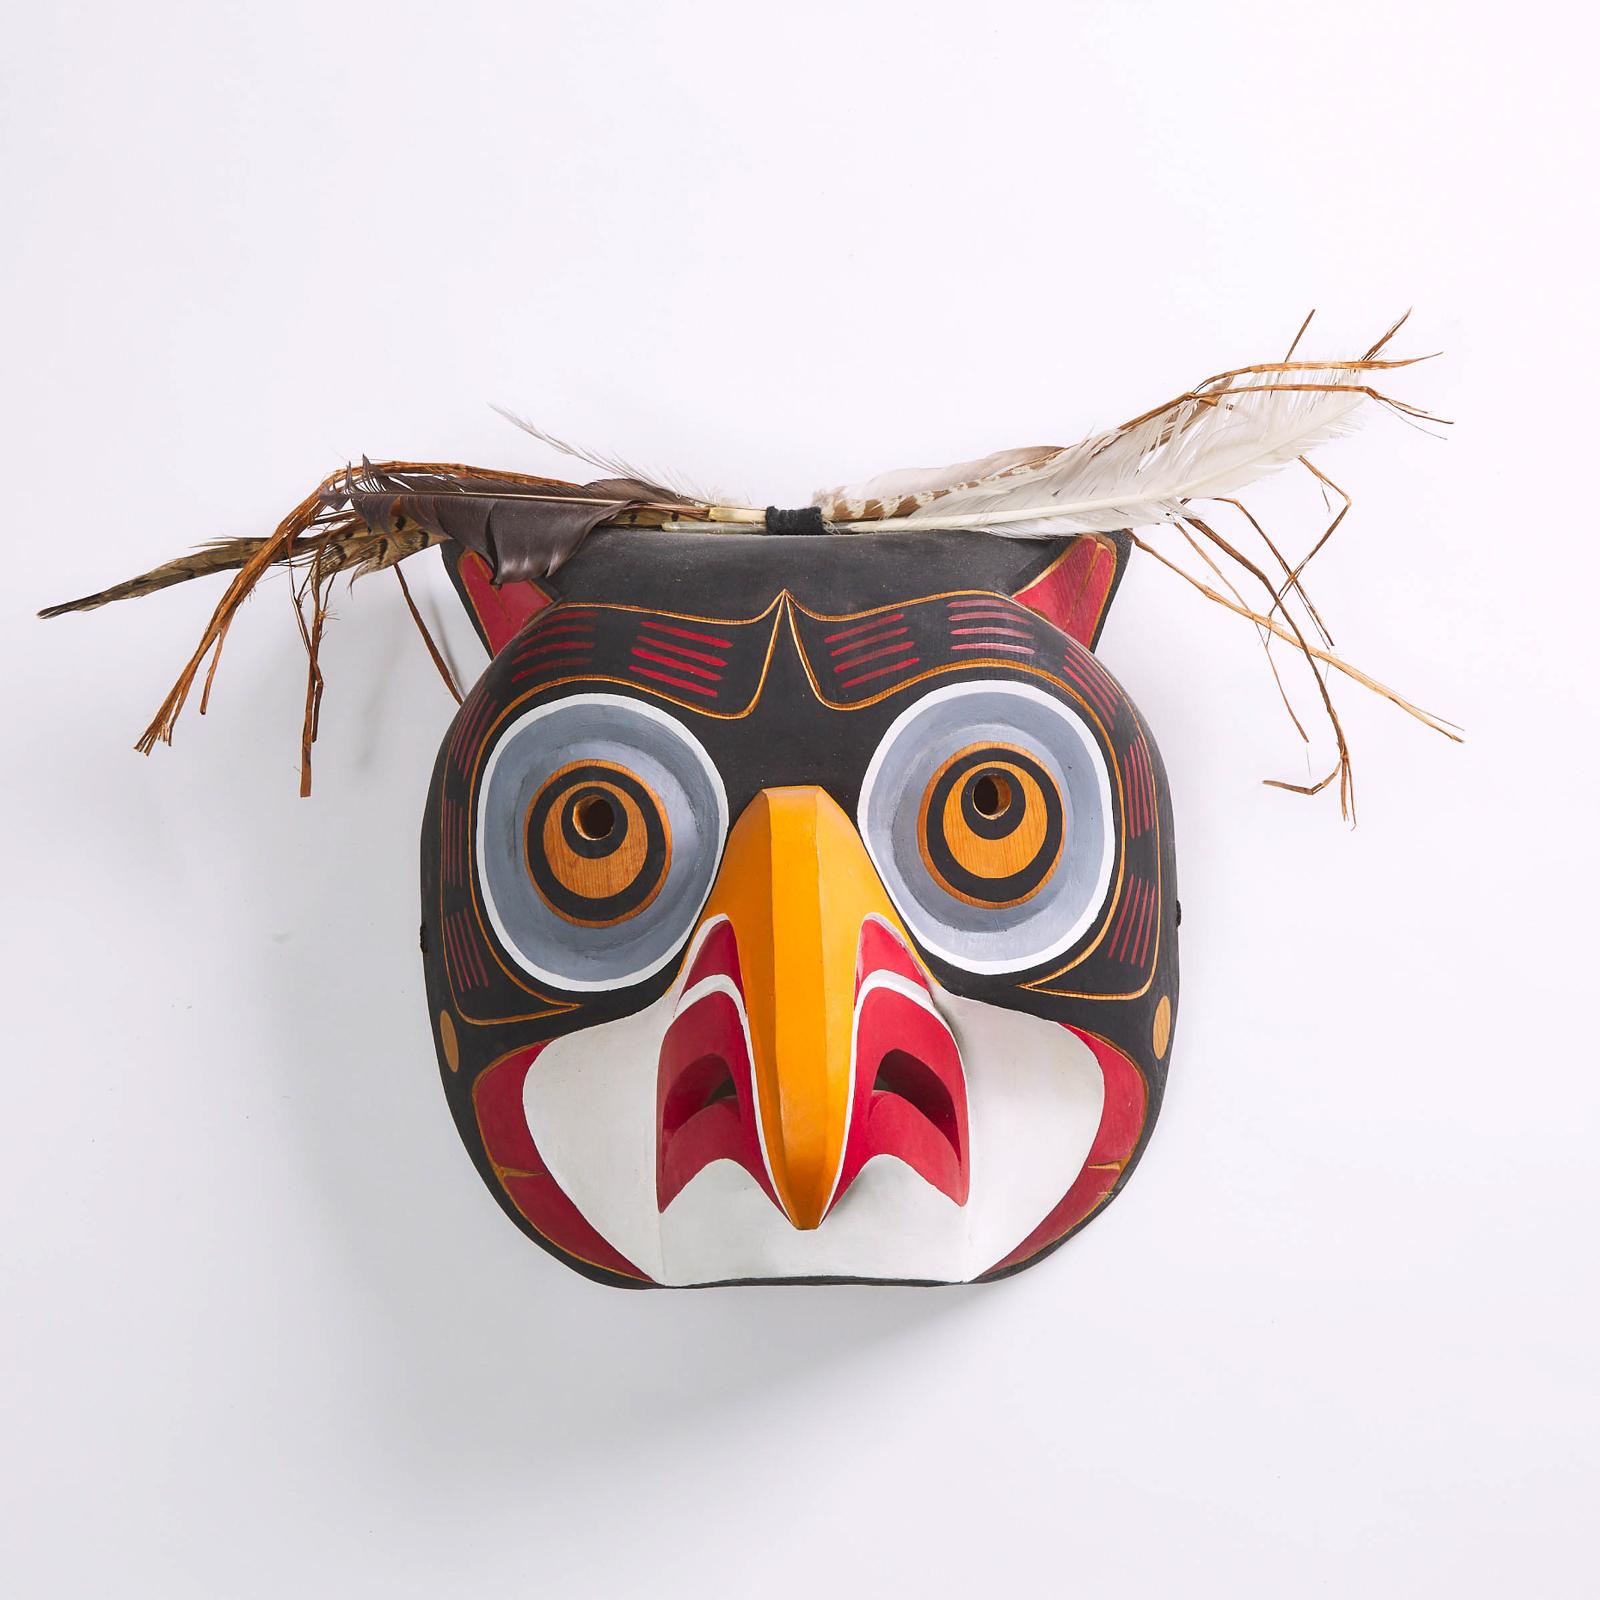 Vern Etzerza - Owl Mask